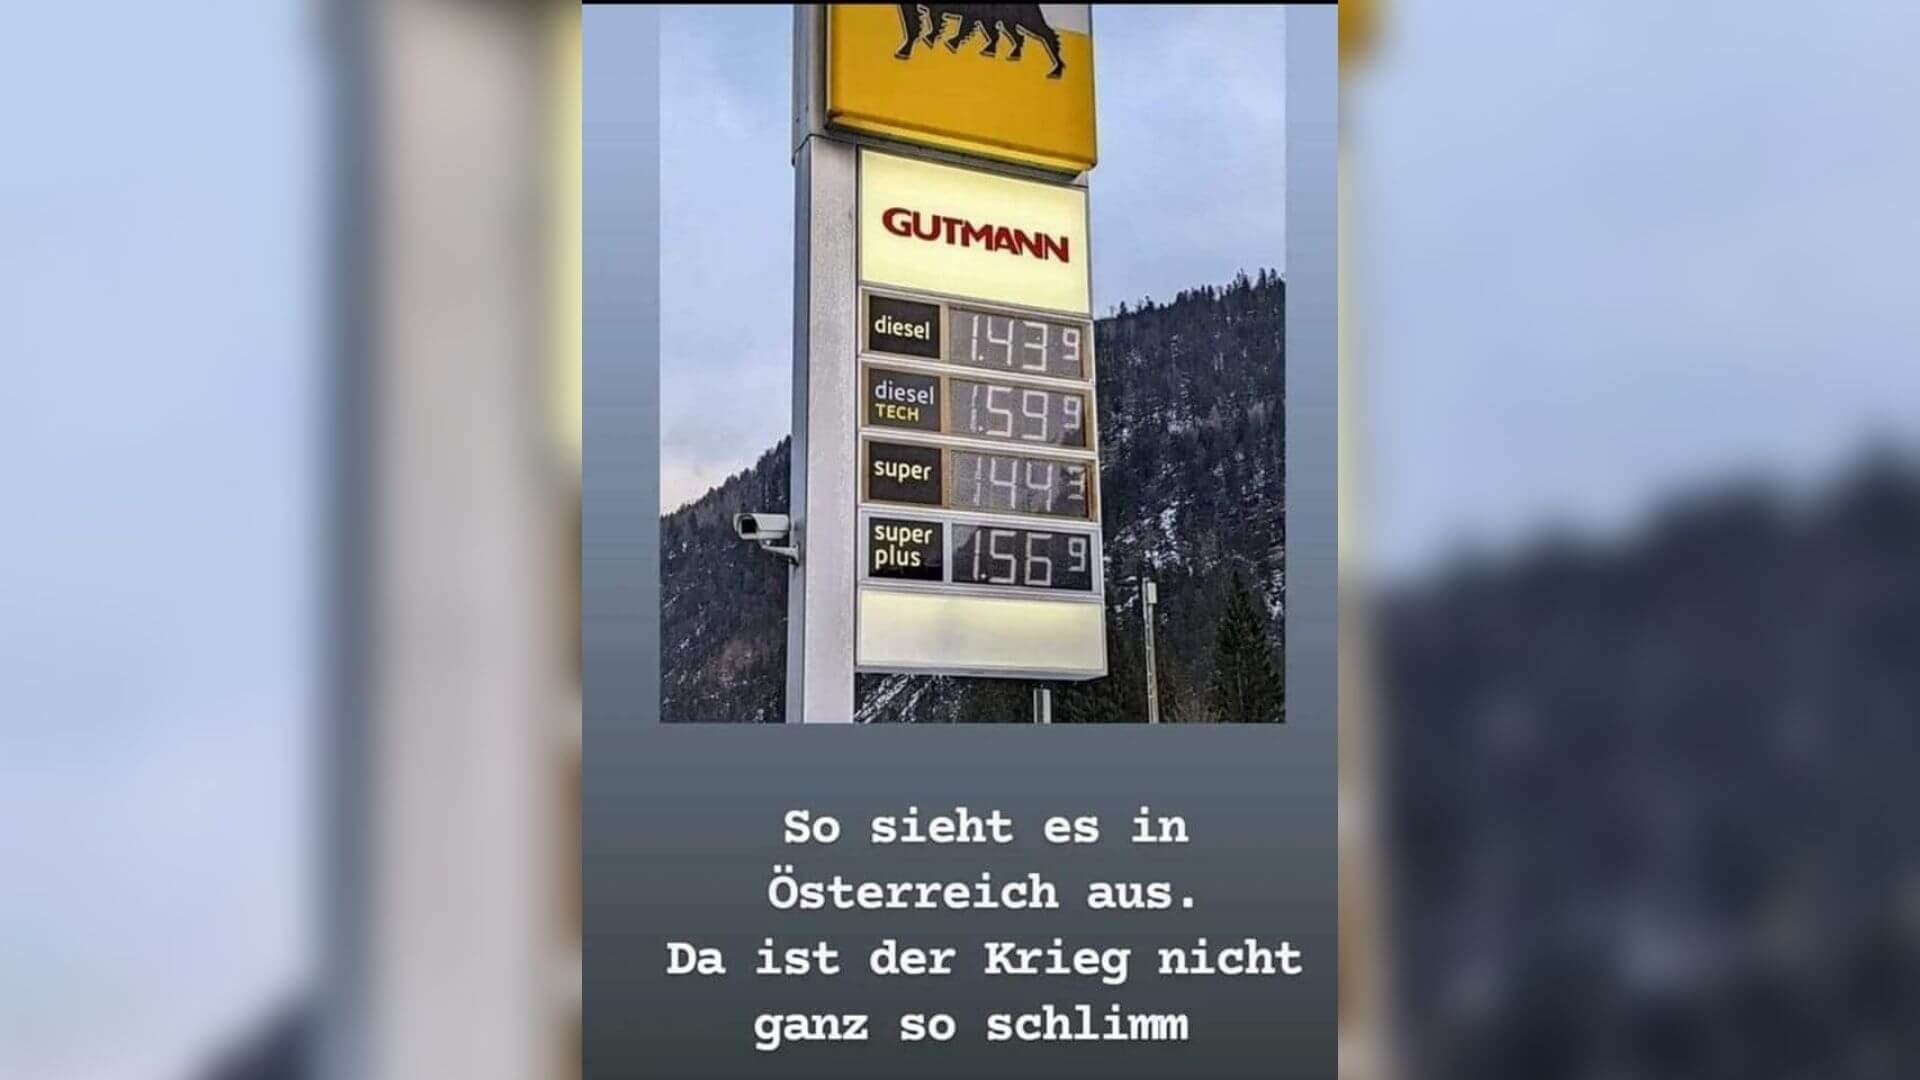 Dieses Foto mit angeblichen Spritpreise in Österreich kursiert aktuell in Sozialen Netzwerken